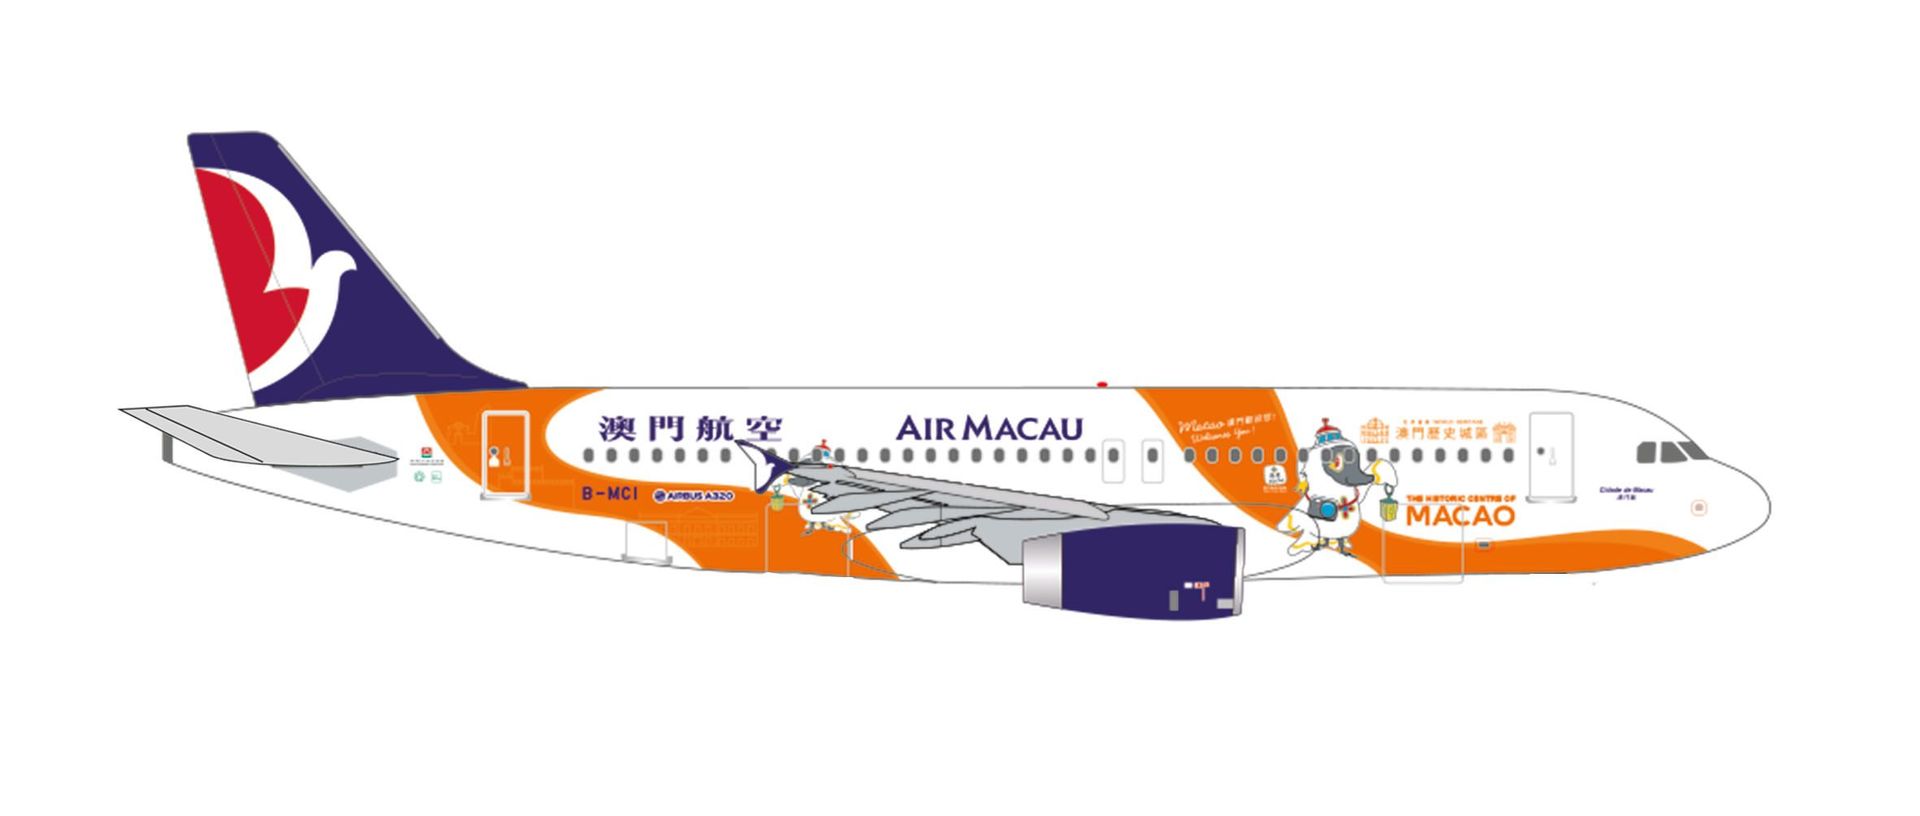 Herpa 536042 - Airbus A320 Air Macau Macau welcomes you 1:500